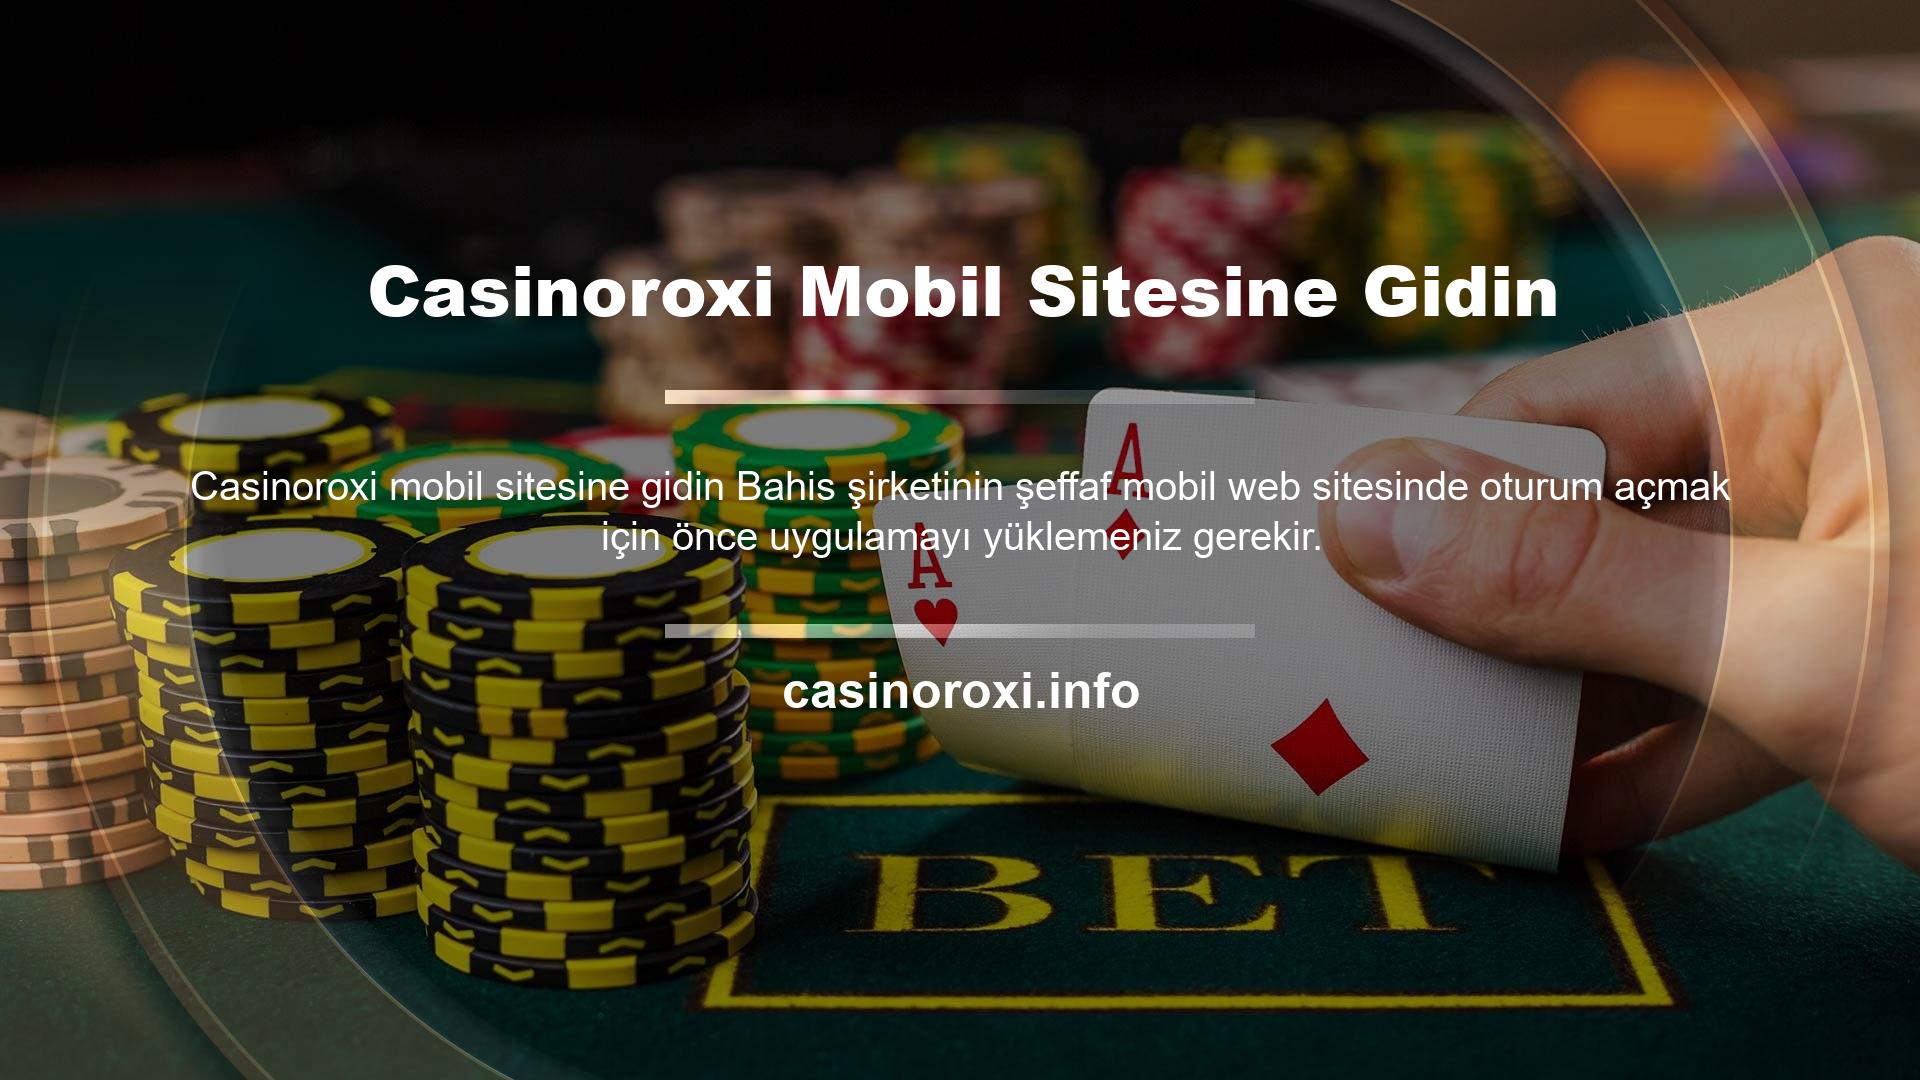 Hızlı Giriş Casinoroxi ile mobil teknolojinin kullanıldığı her alandan oyun sitelerine giriş yapabilirsiniz